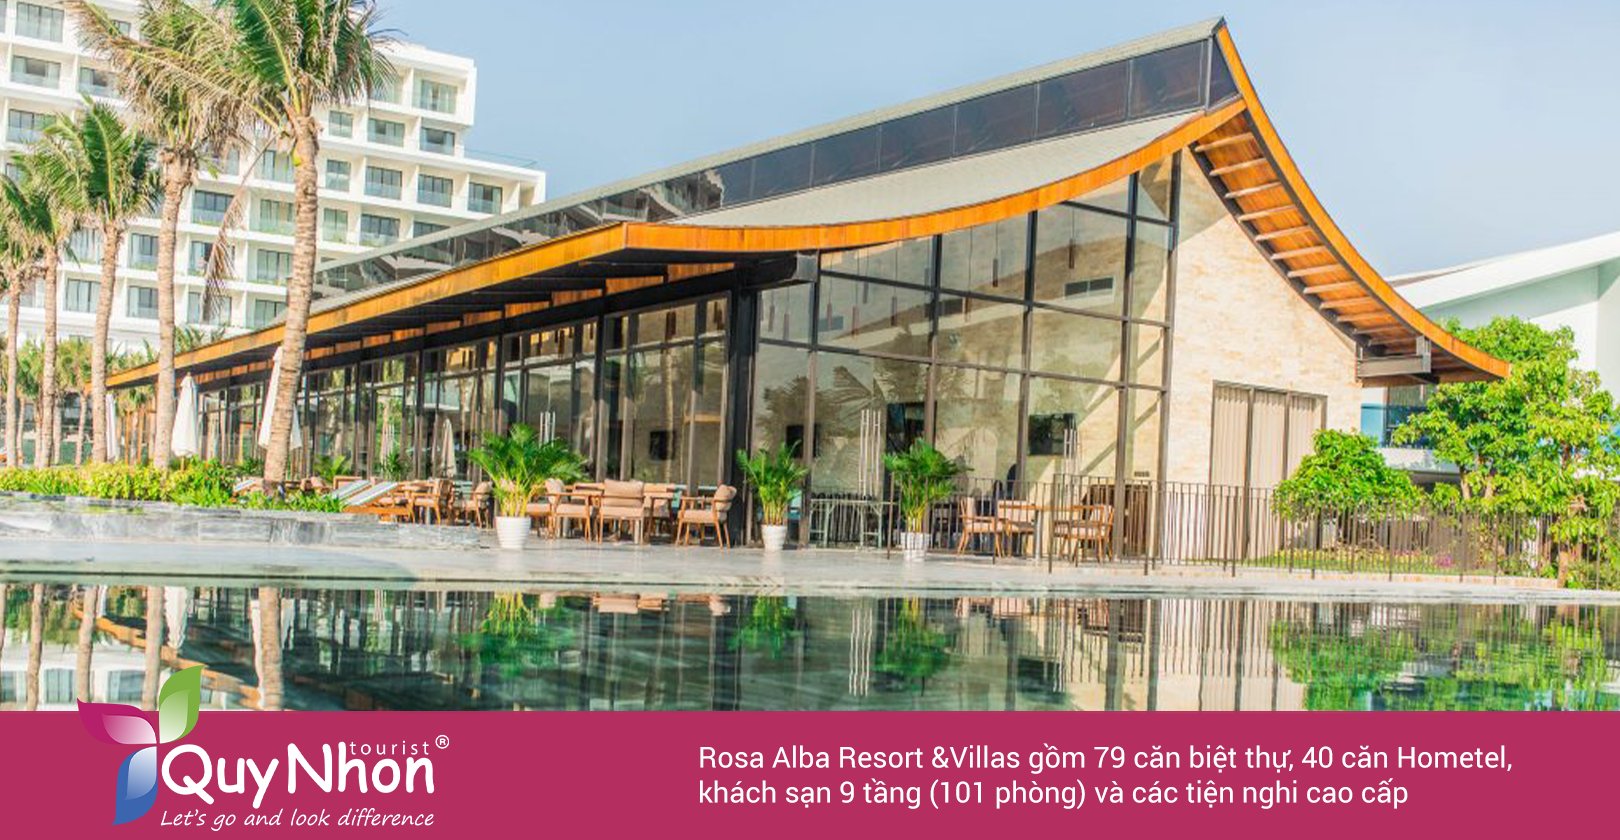  Rosa Alba Resort & Villas Tuy Hòa: Hồng ngọc giữa lòng phố biển.